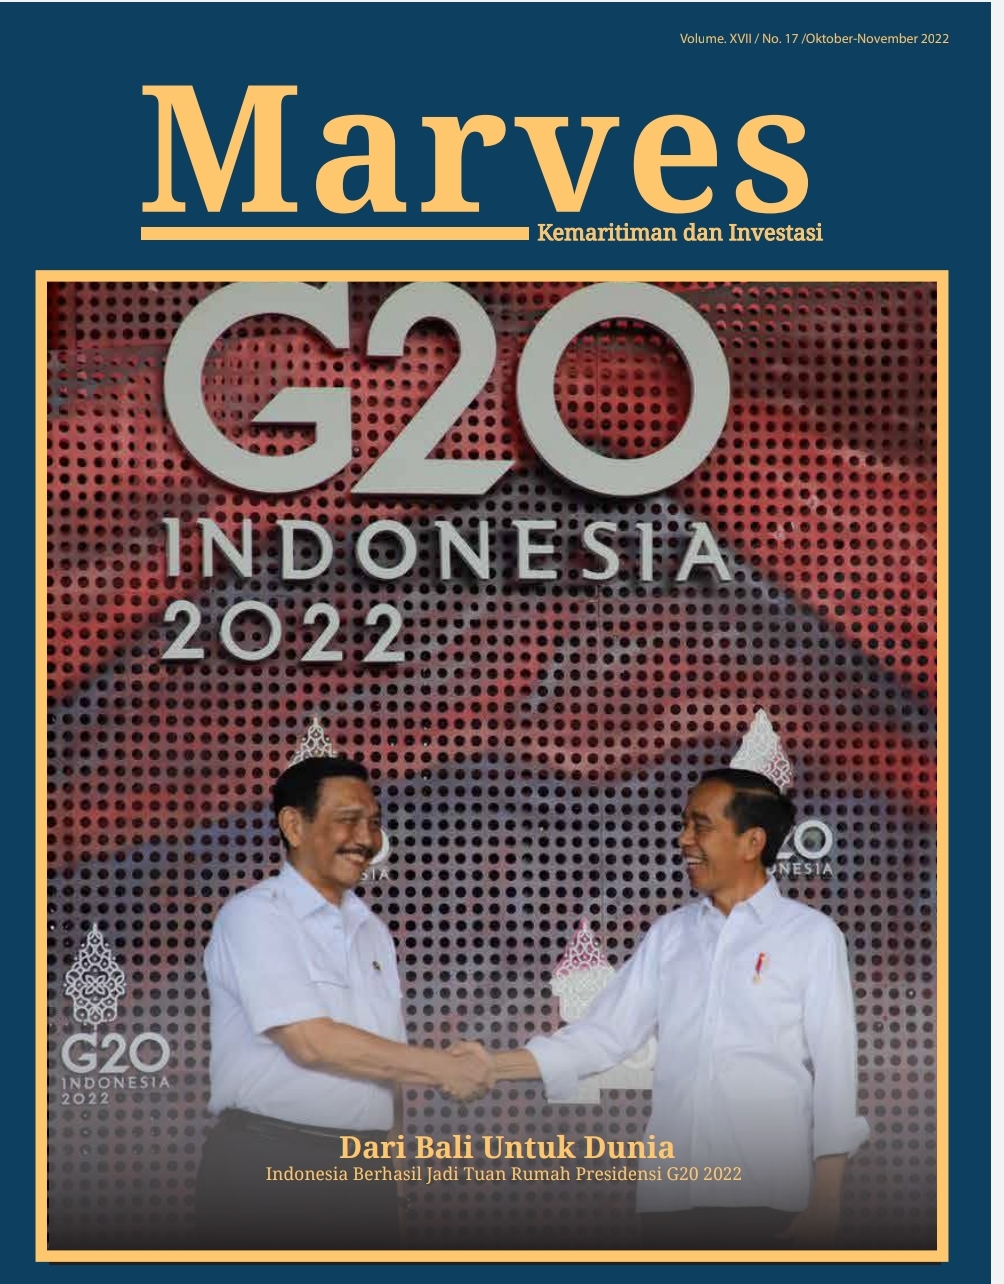 G20 Indonesia 2022 Dari Bali Untuk Dunia